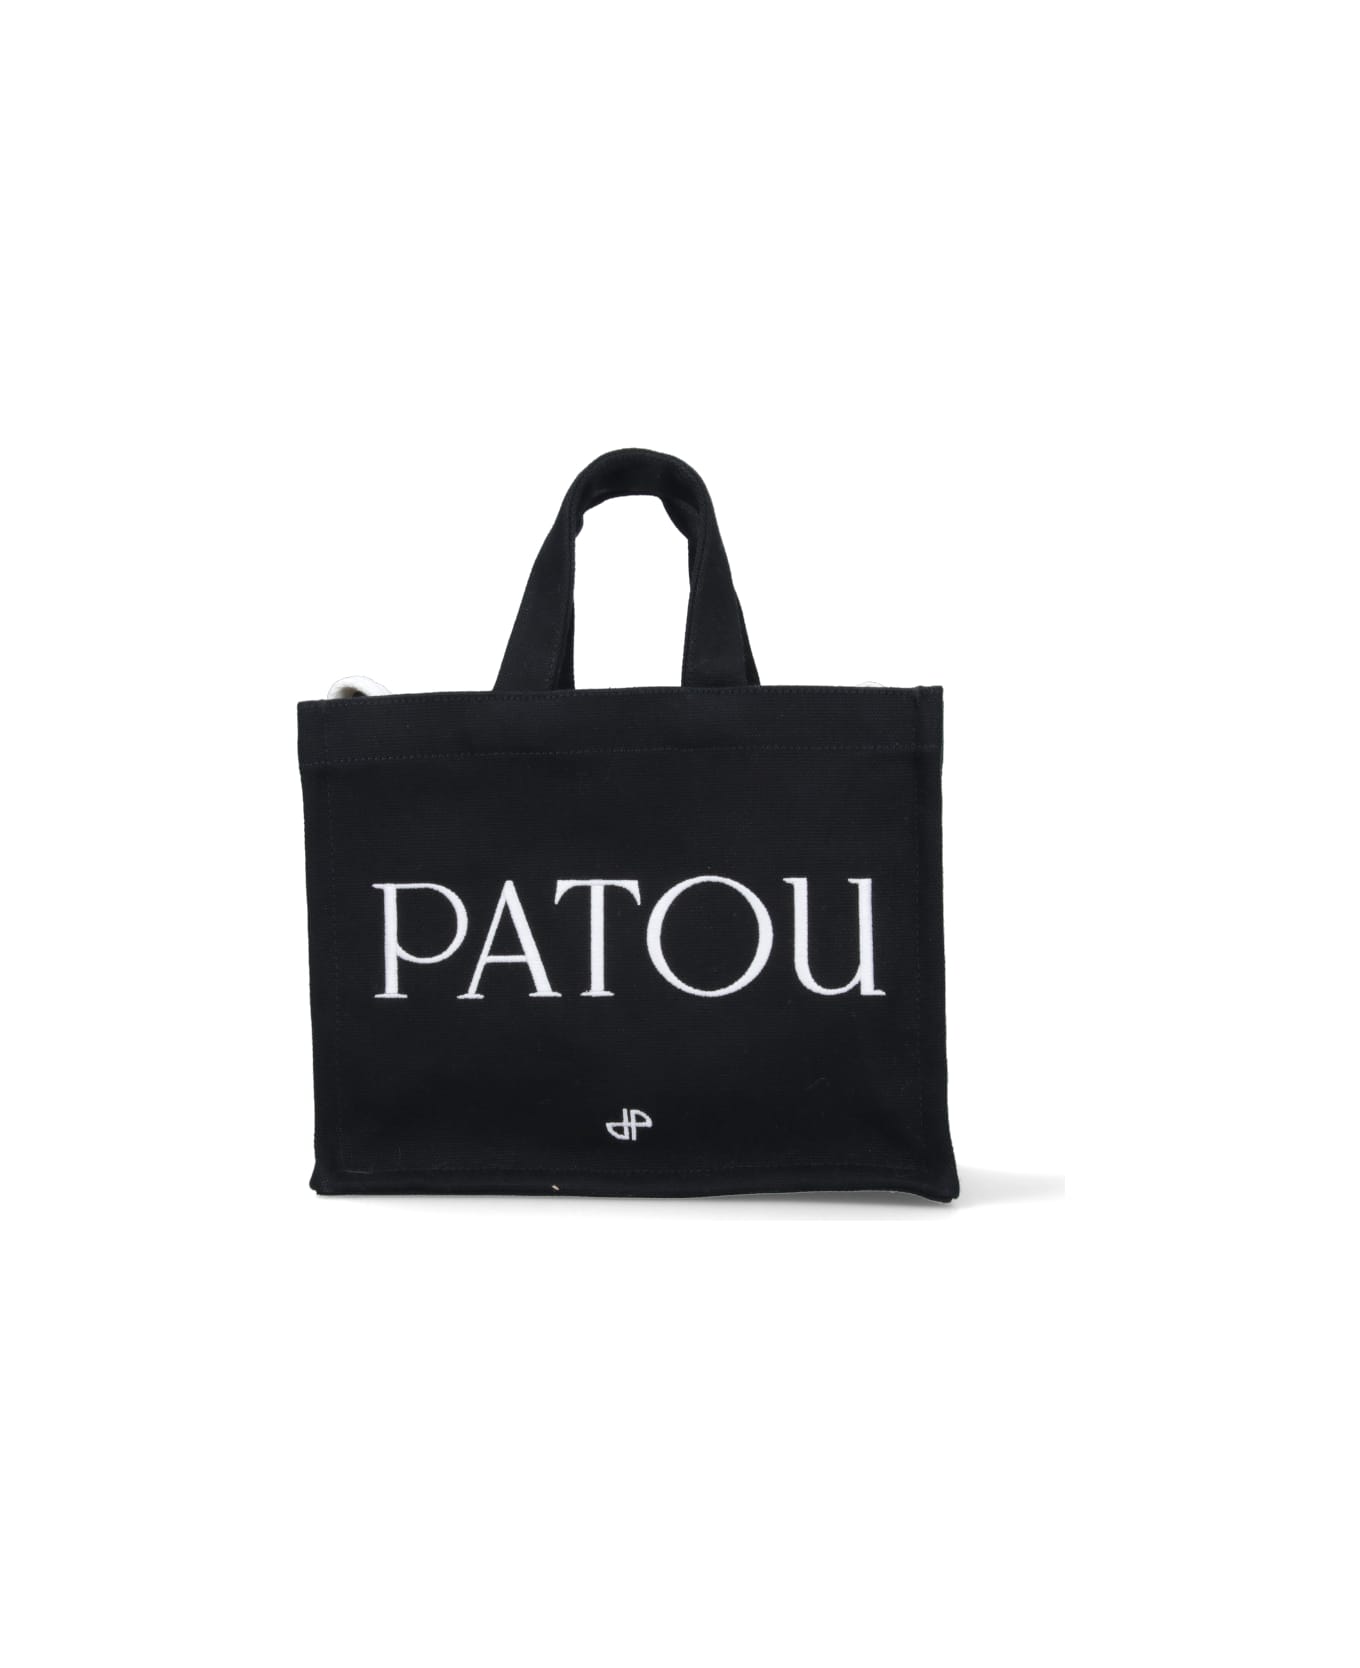 Patou Logo Tote Bag - BLACK トートバッグ